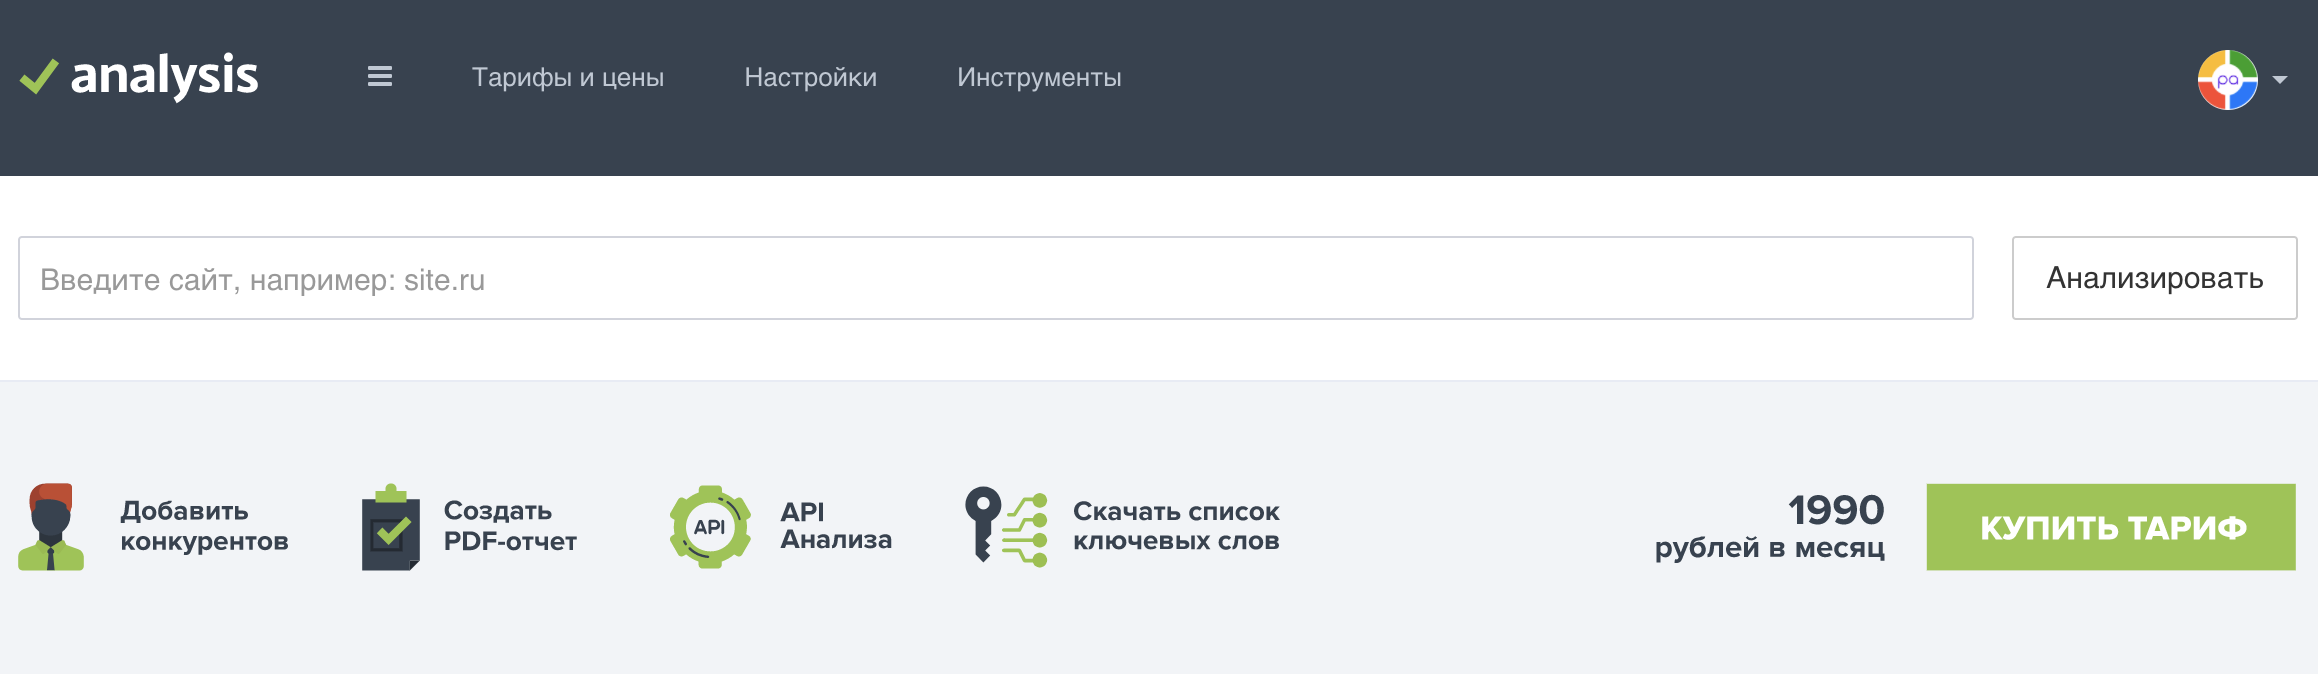 Минимальный тариф аналитики на месяц от pr-cy.ru